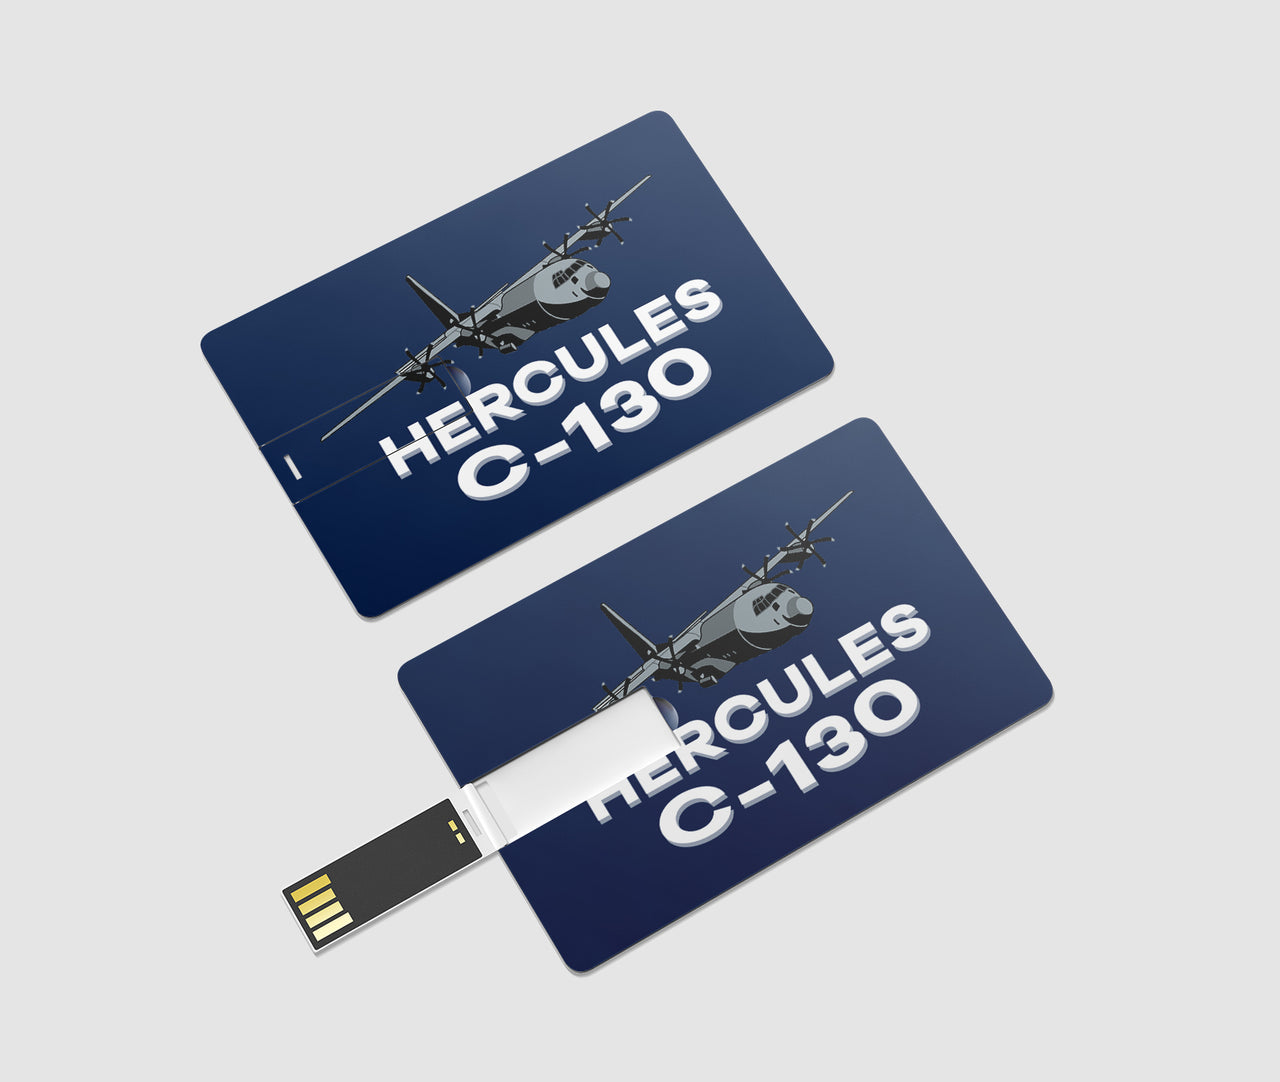 The Hercules C130 Designed USB Cards